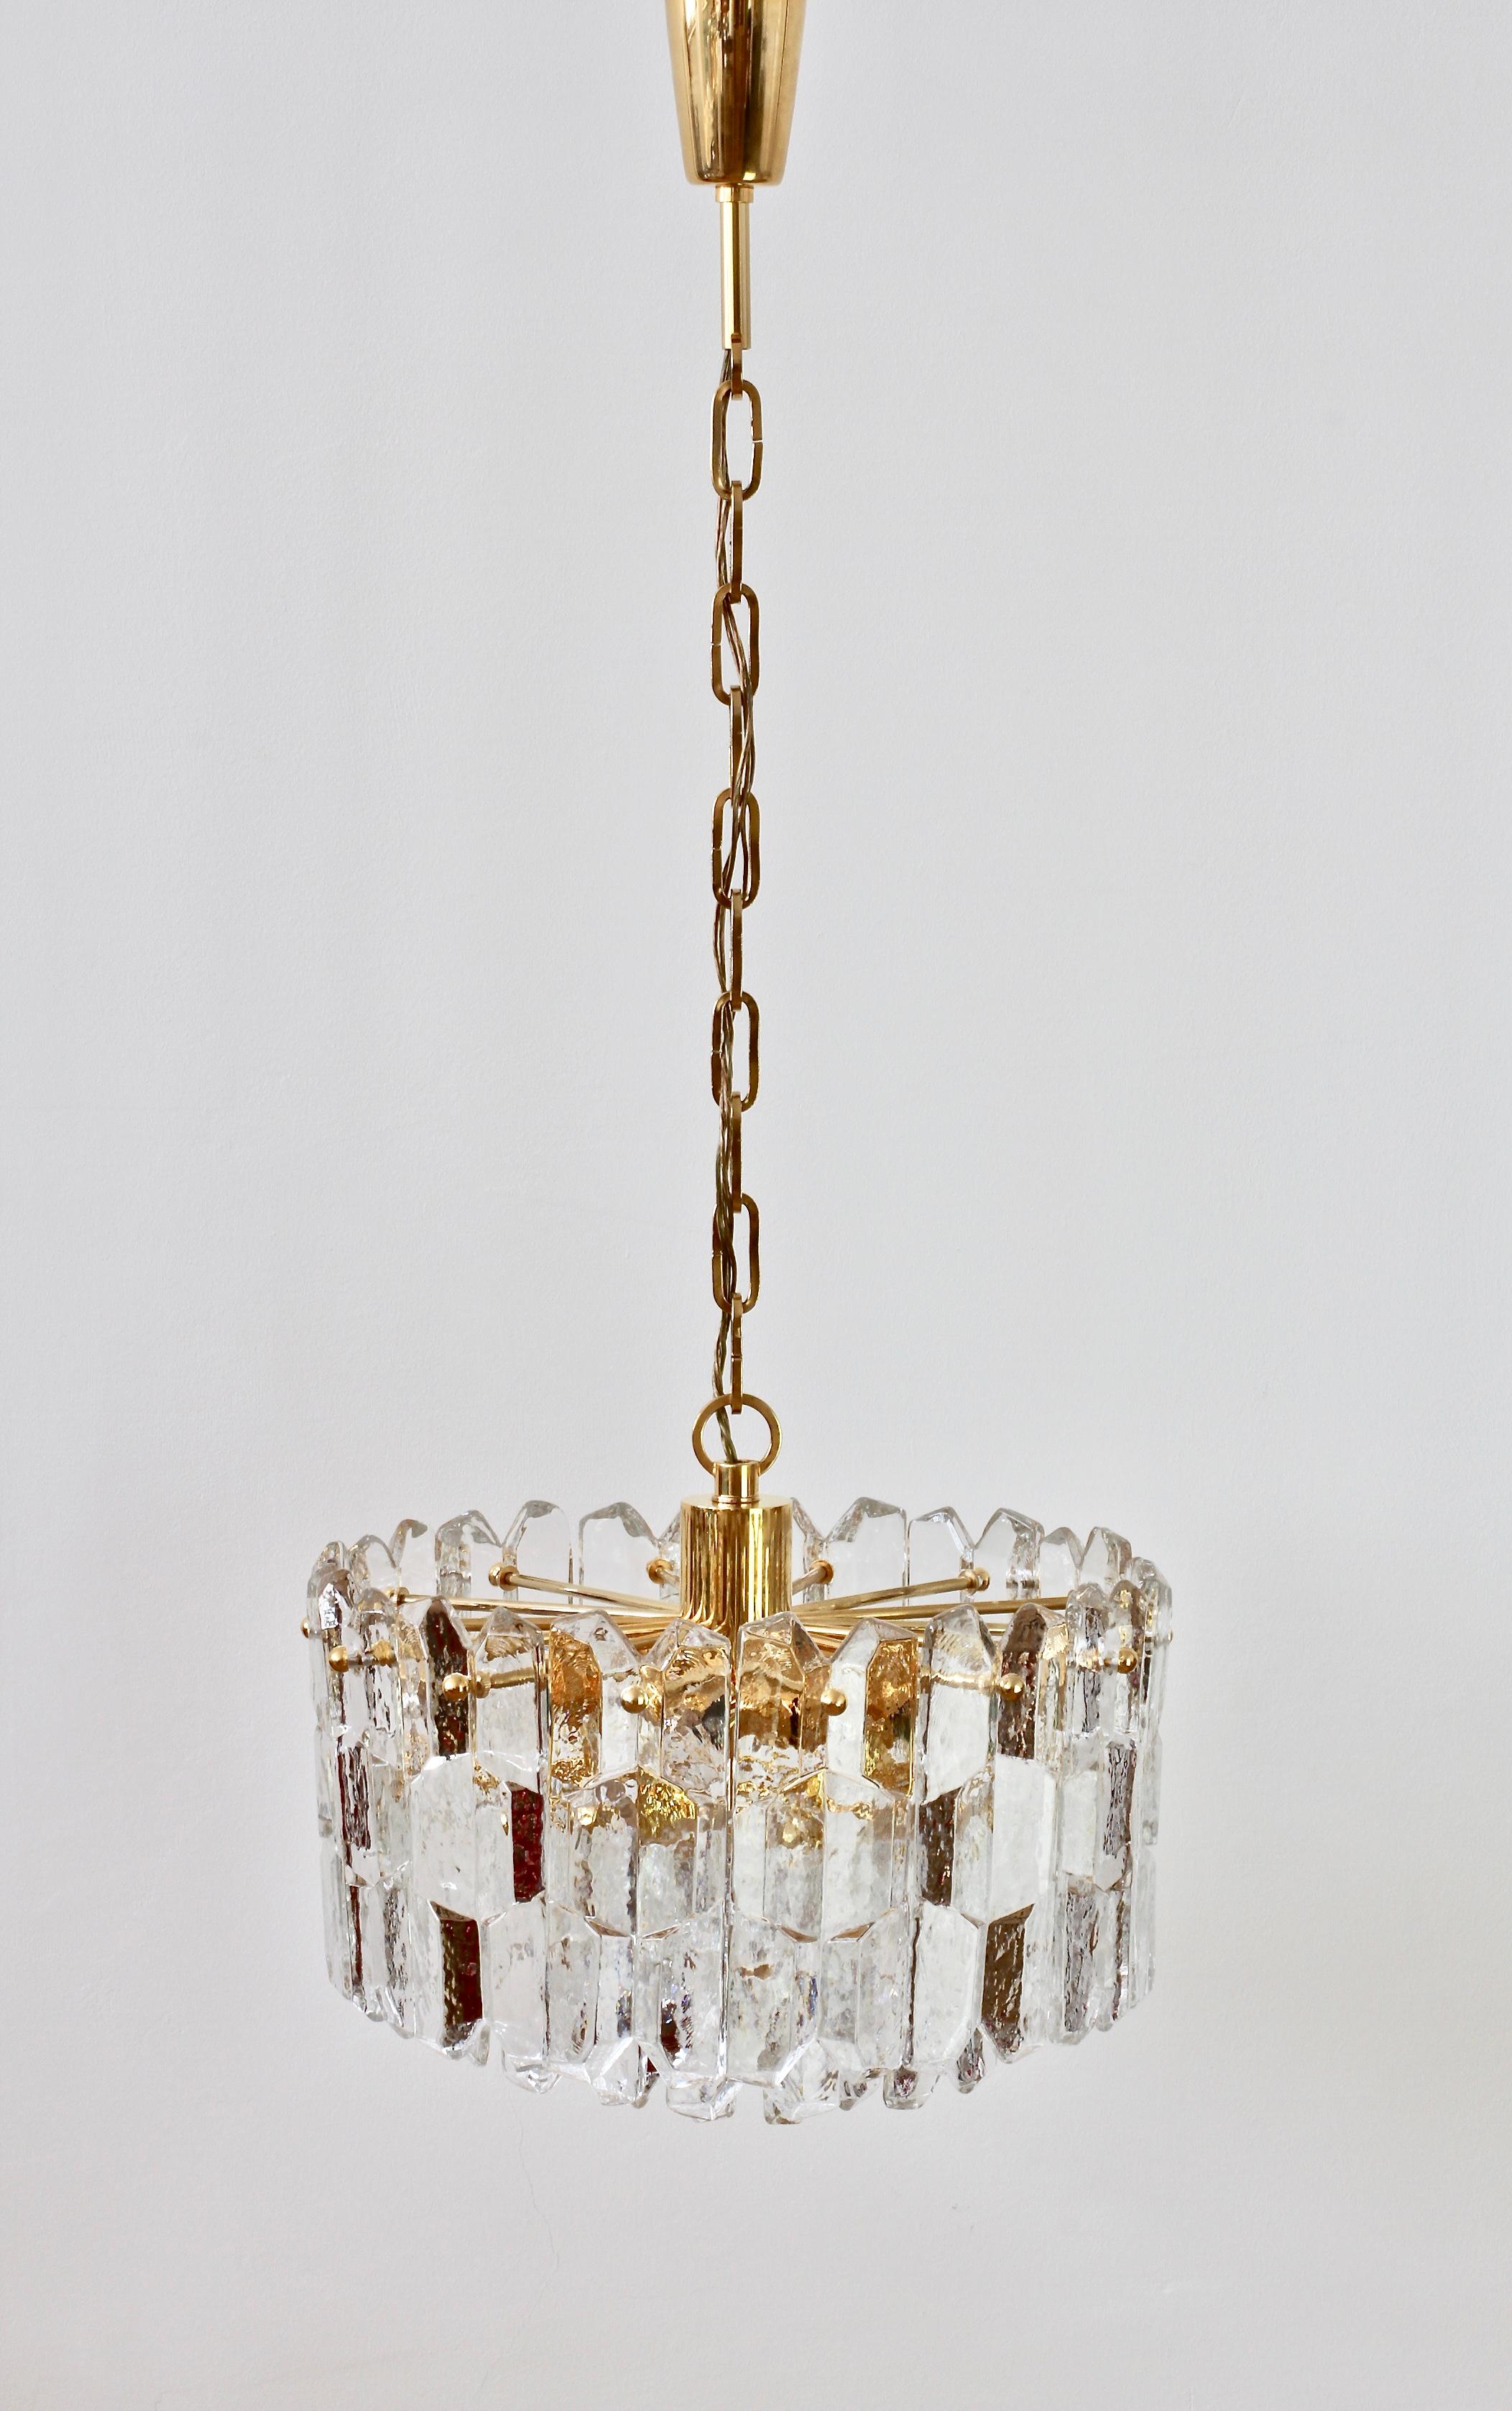 Moderner Vintage-Kronleuchter 'Palazzo' aus österreichischem Eiskristallglas von Kalmar, um 1970. Sechsundzwanzig hängende Glaselemente, die wie schmelzende Eiskristalle aussehen, hängen an einem 24-karätigen, vergoldeten Messingbeschlag.

Diese